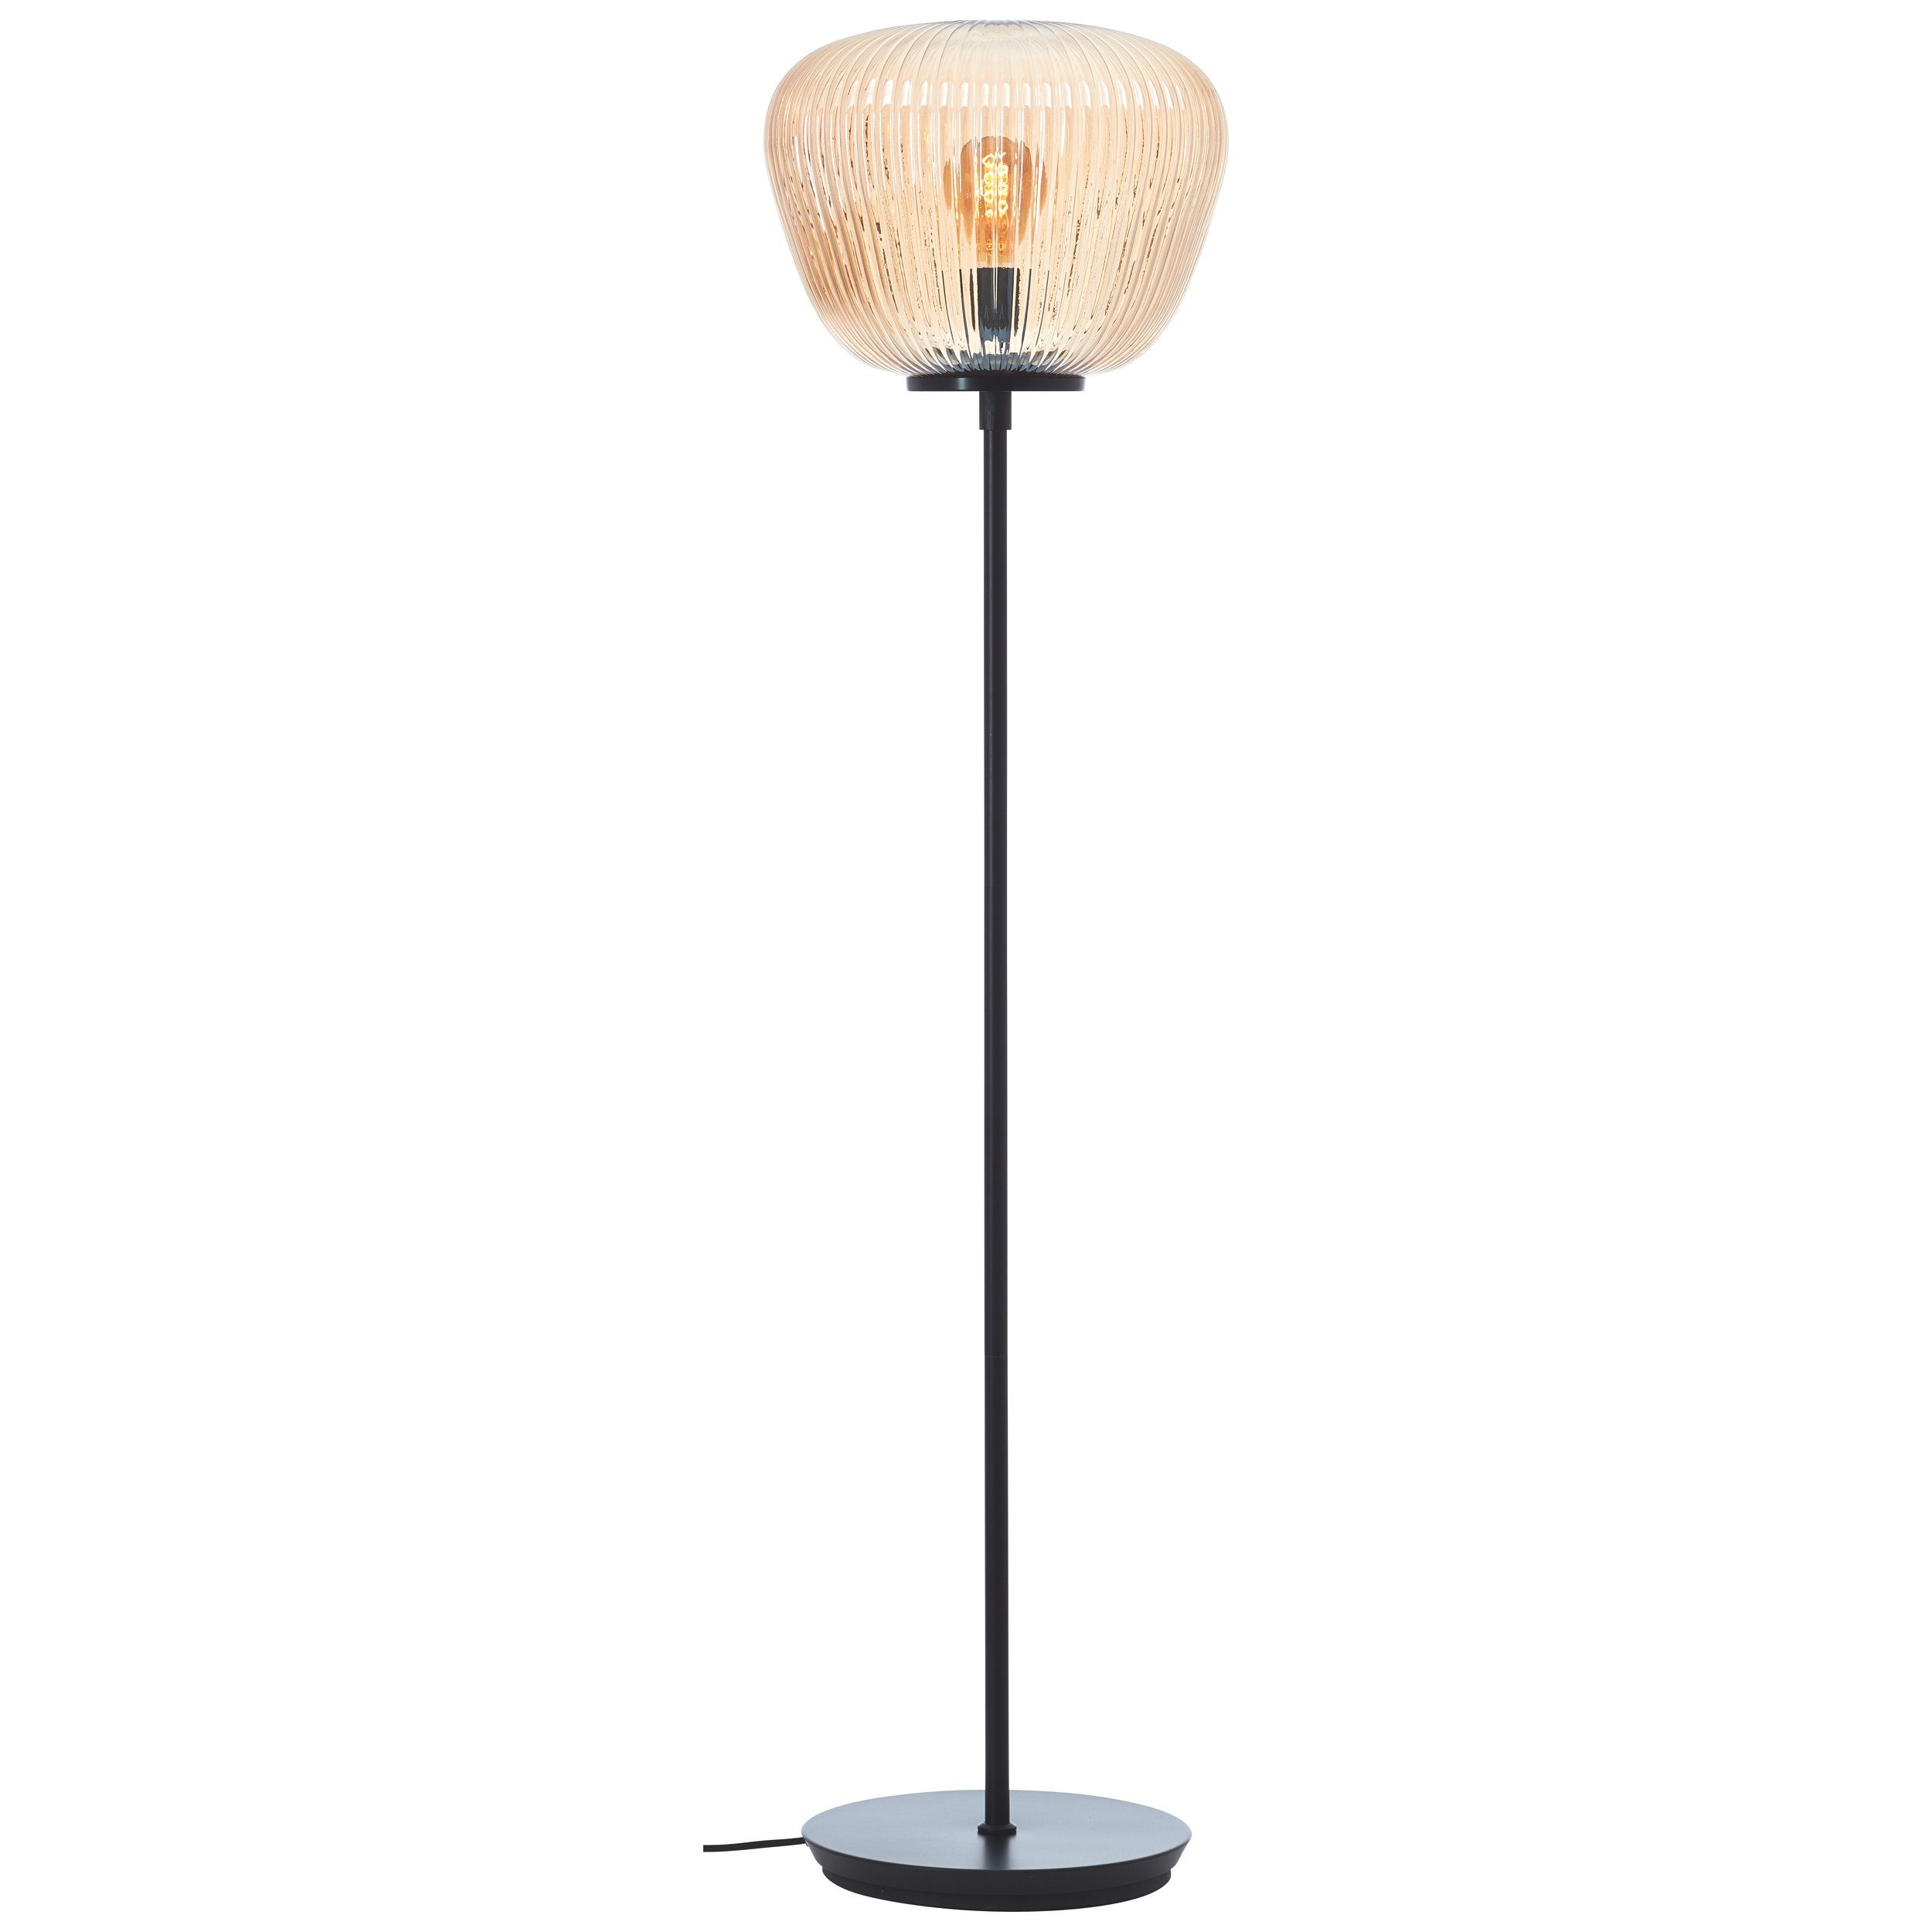 Amber-Bernsteinfarben Riffelglas, E27, x 140 35 cm, Stehlampe, Lightbox Stehlampe, ohne Leuchtmittel,